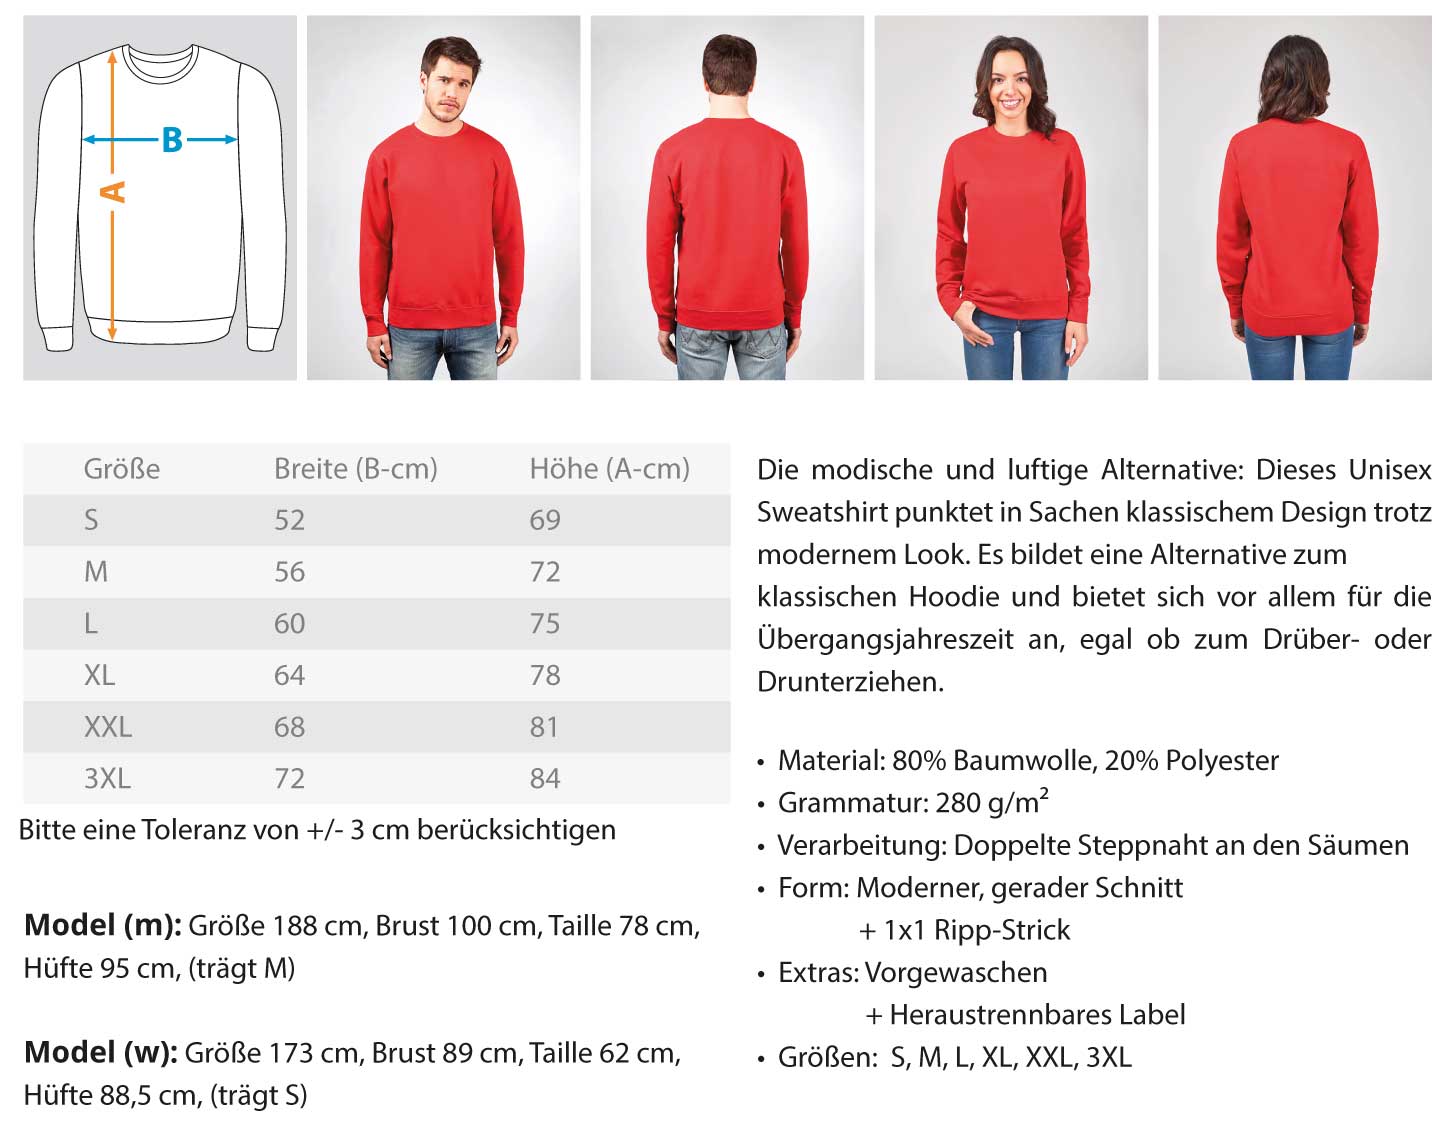 Gerüstbauer / RESPEKT EHRE STOLZ  - Unisex Pullover €34.95 Gerüstbauer - Shop >>